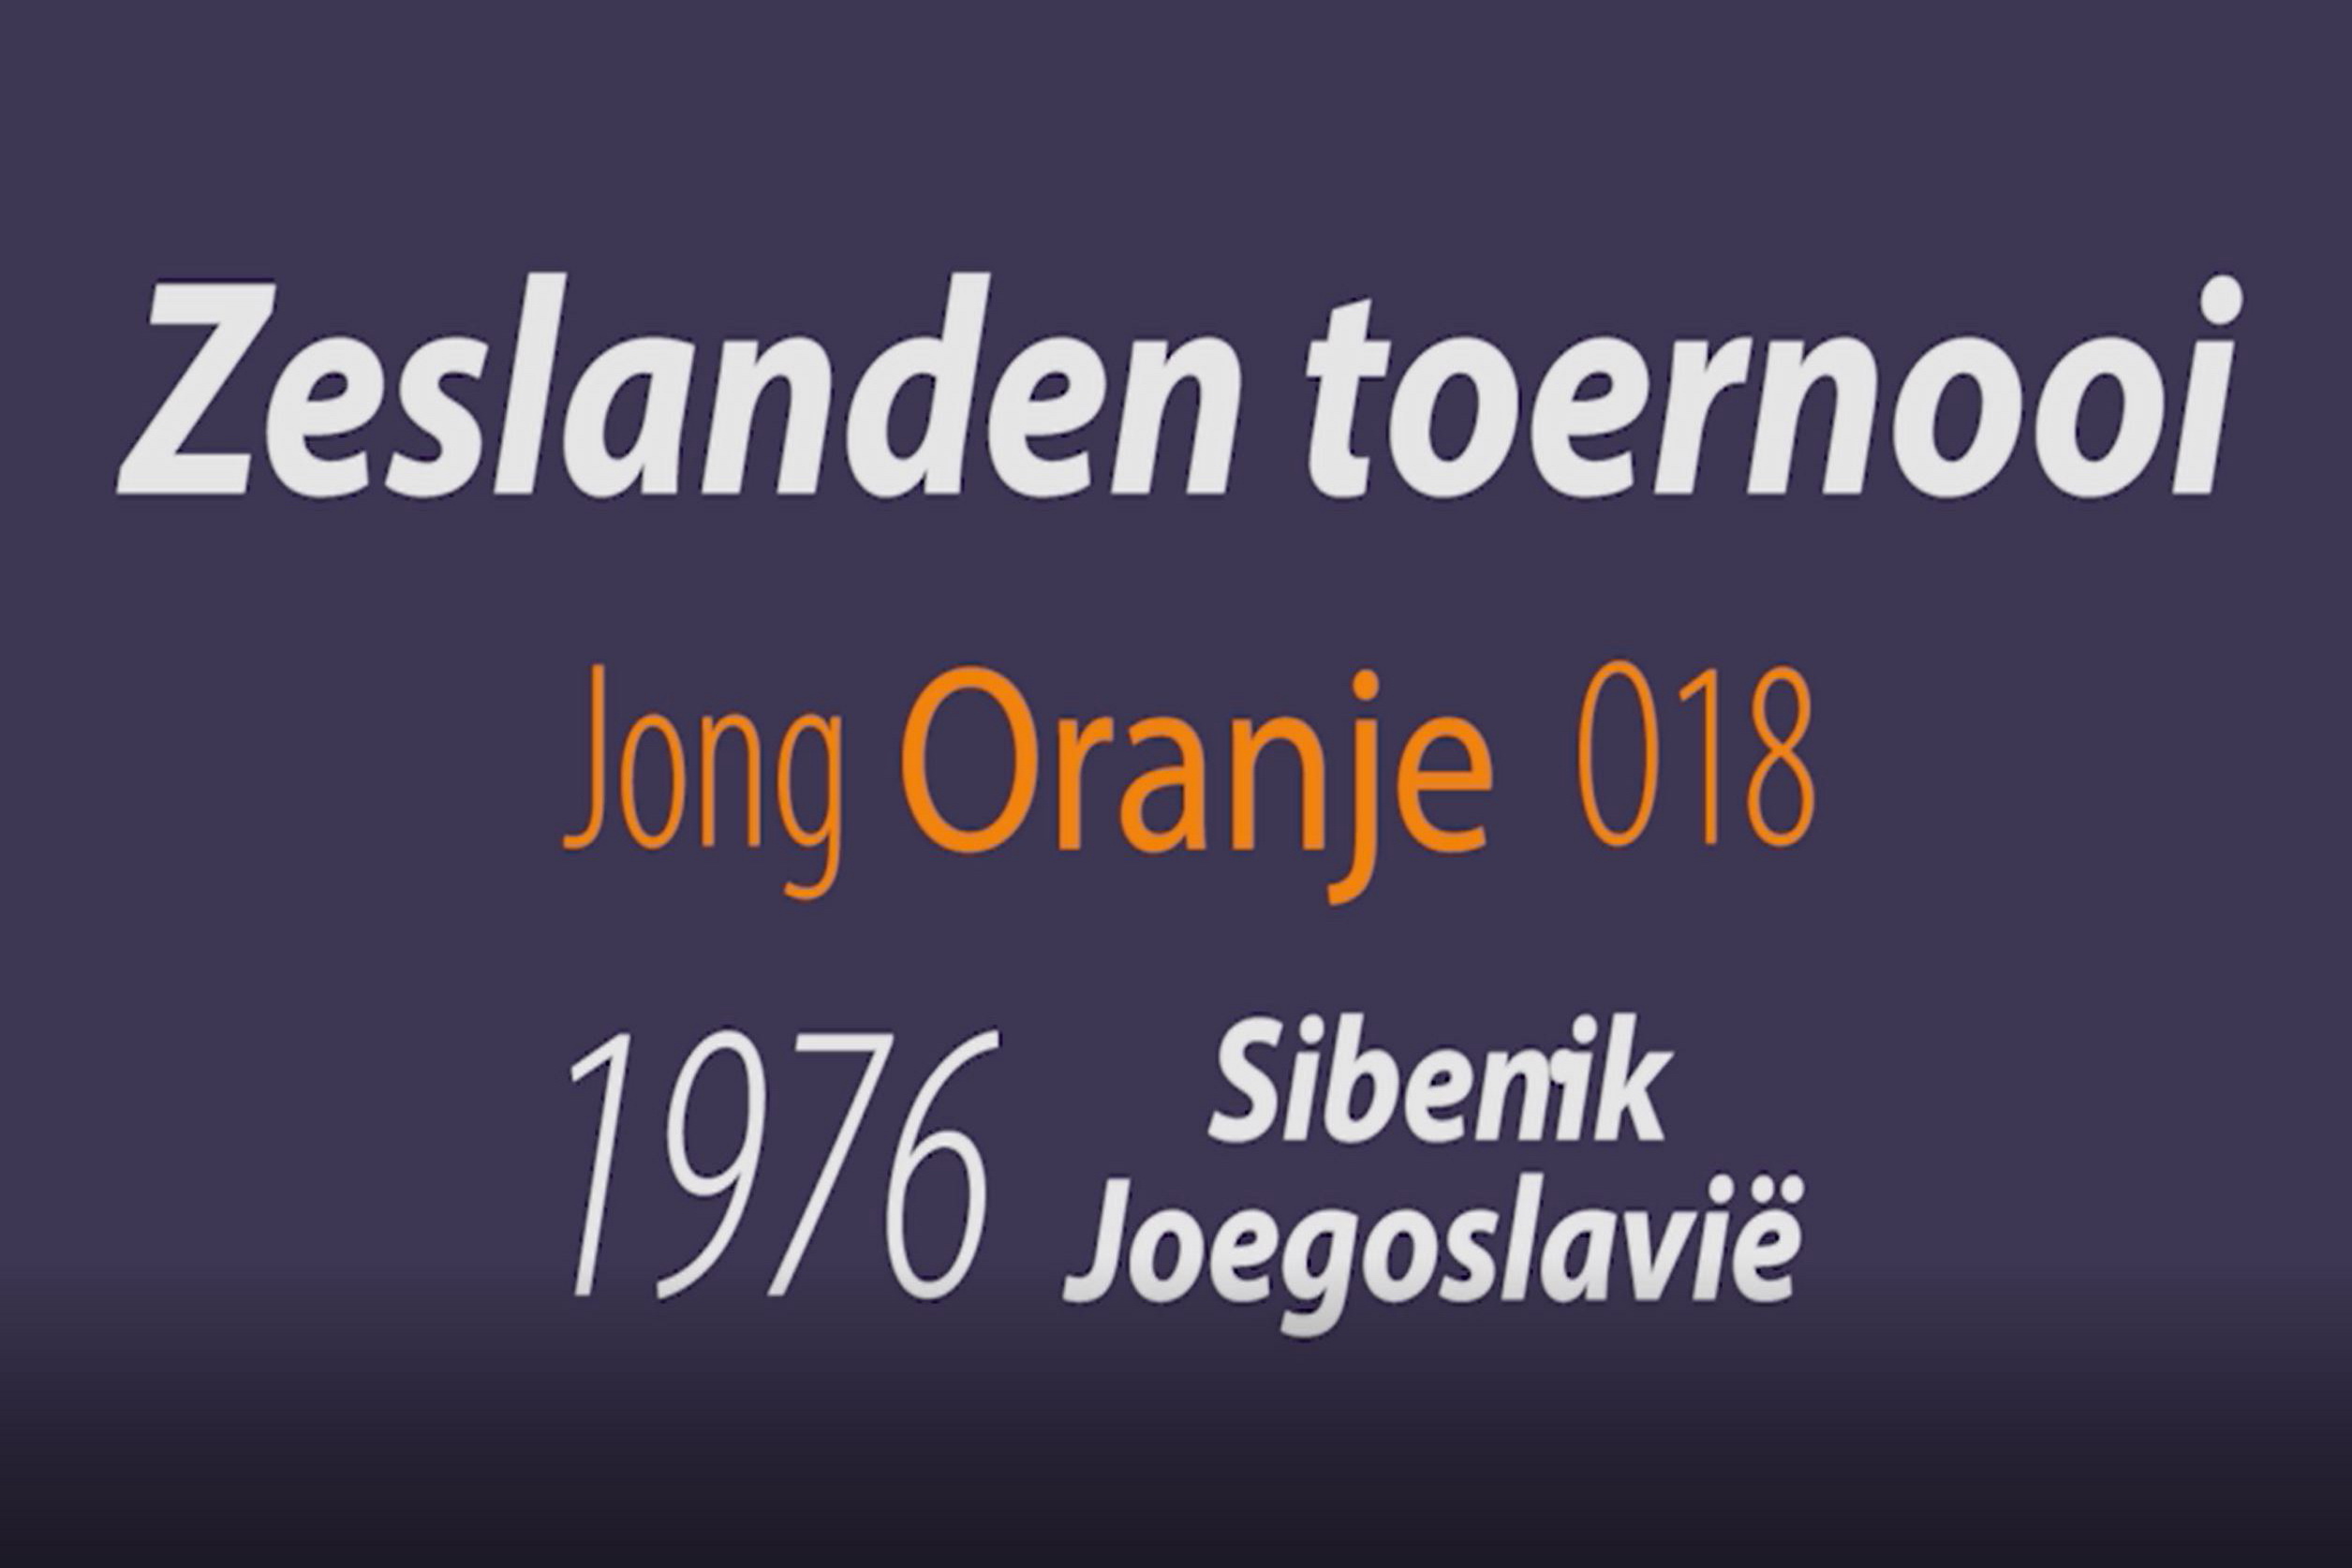 Zeslanden toernooi Jong Oranje O18 in Joegoslavië 1976